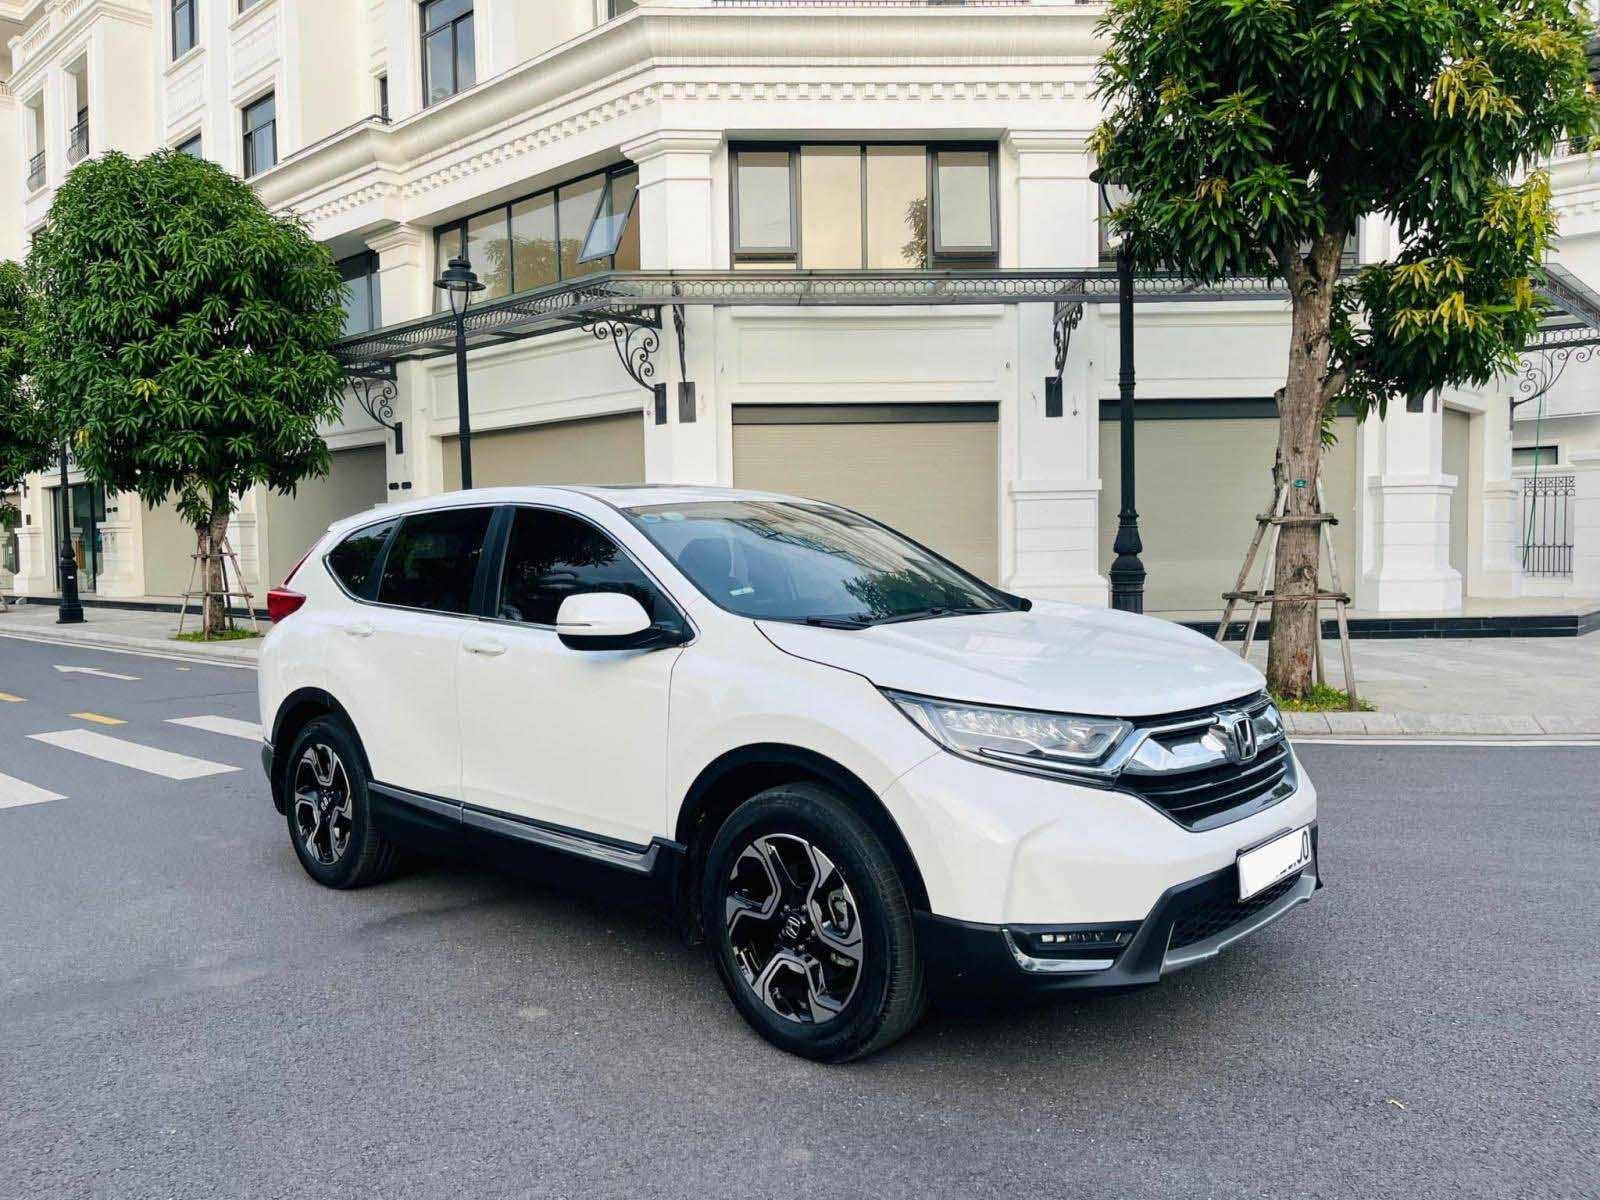 Honda CR-V 2018 nhập khẩu giờ giá bao nhiêu, liệu có đáng mua? - Ảnh 1.